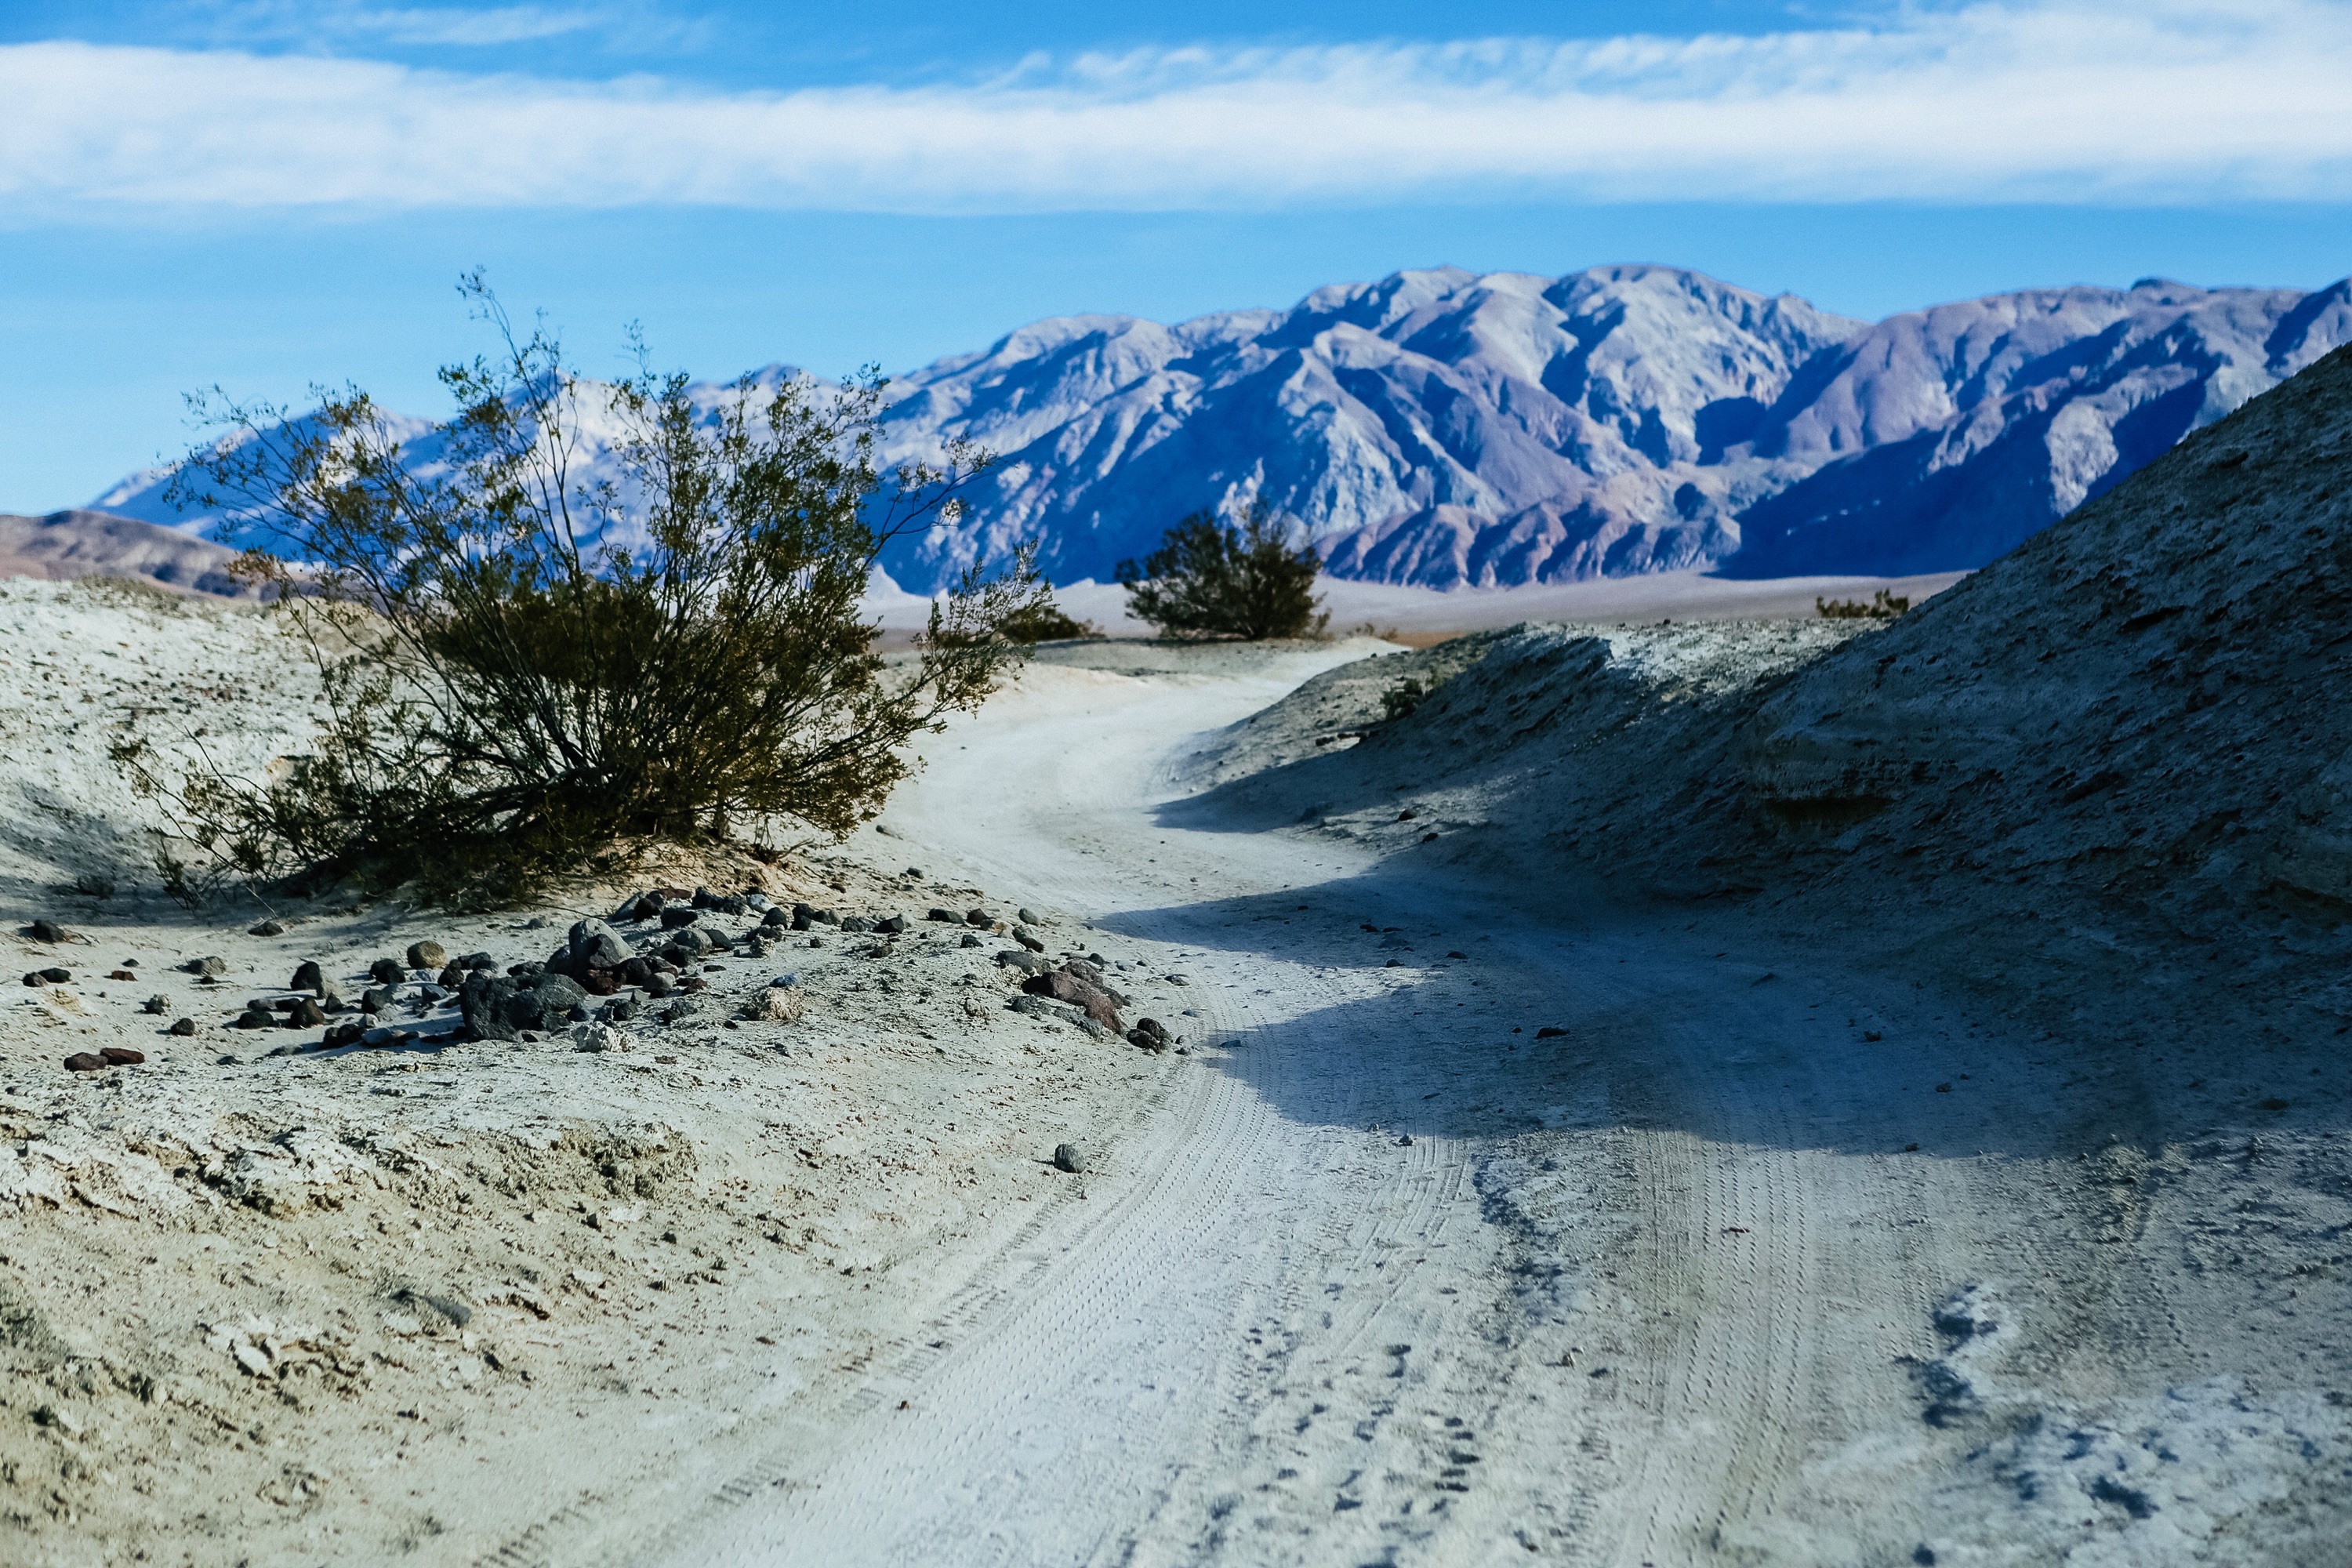 Death Valley Dual Sport Moto Wilderness